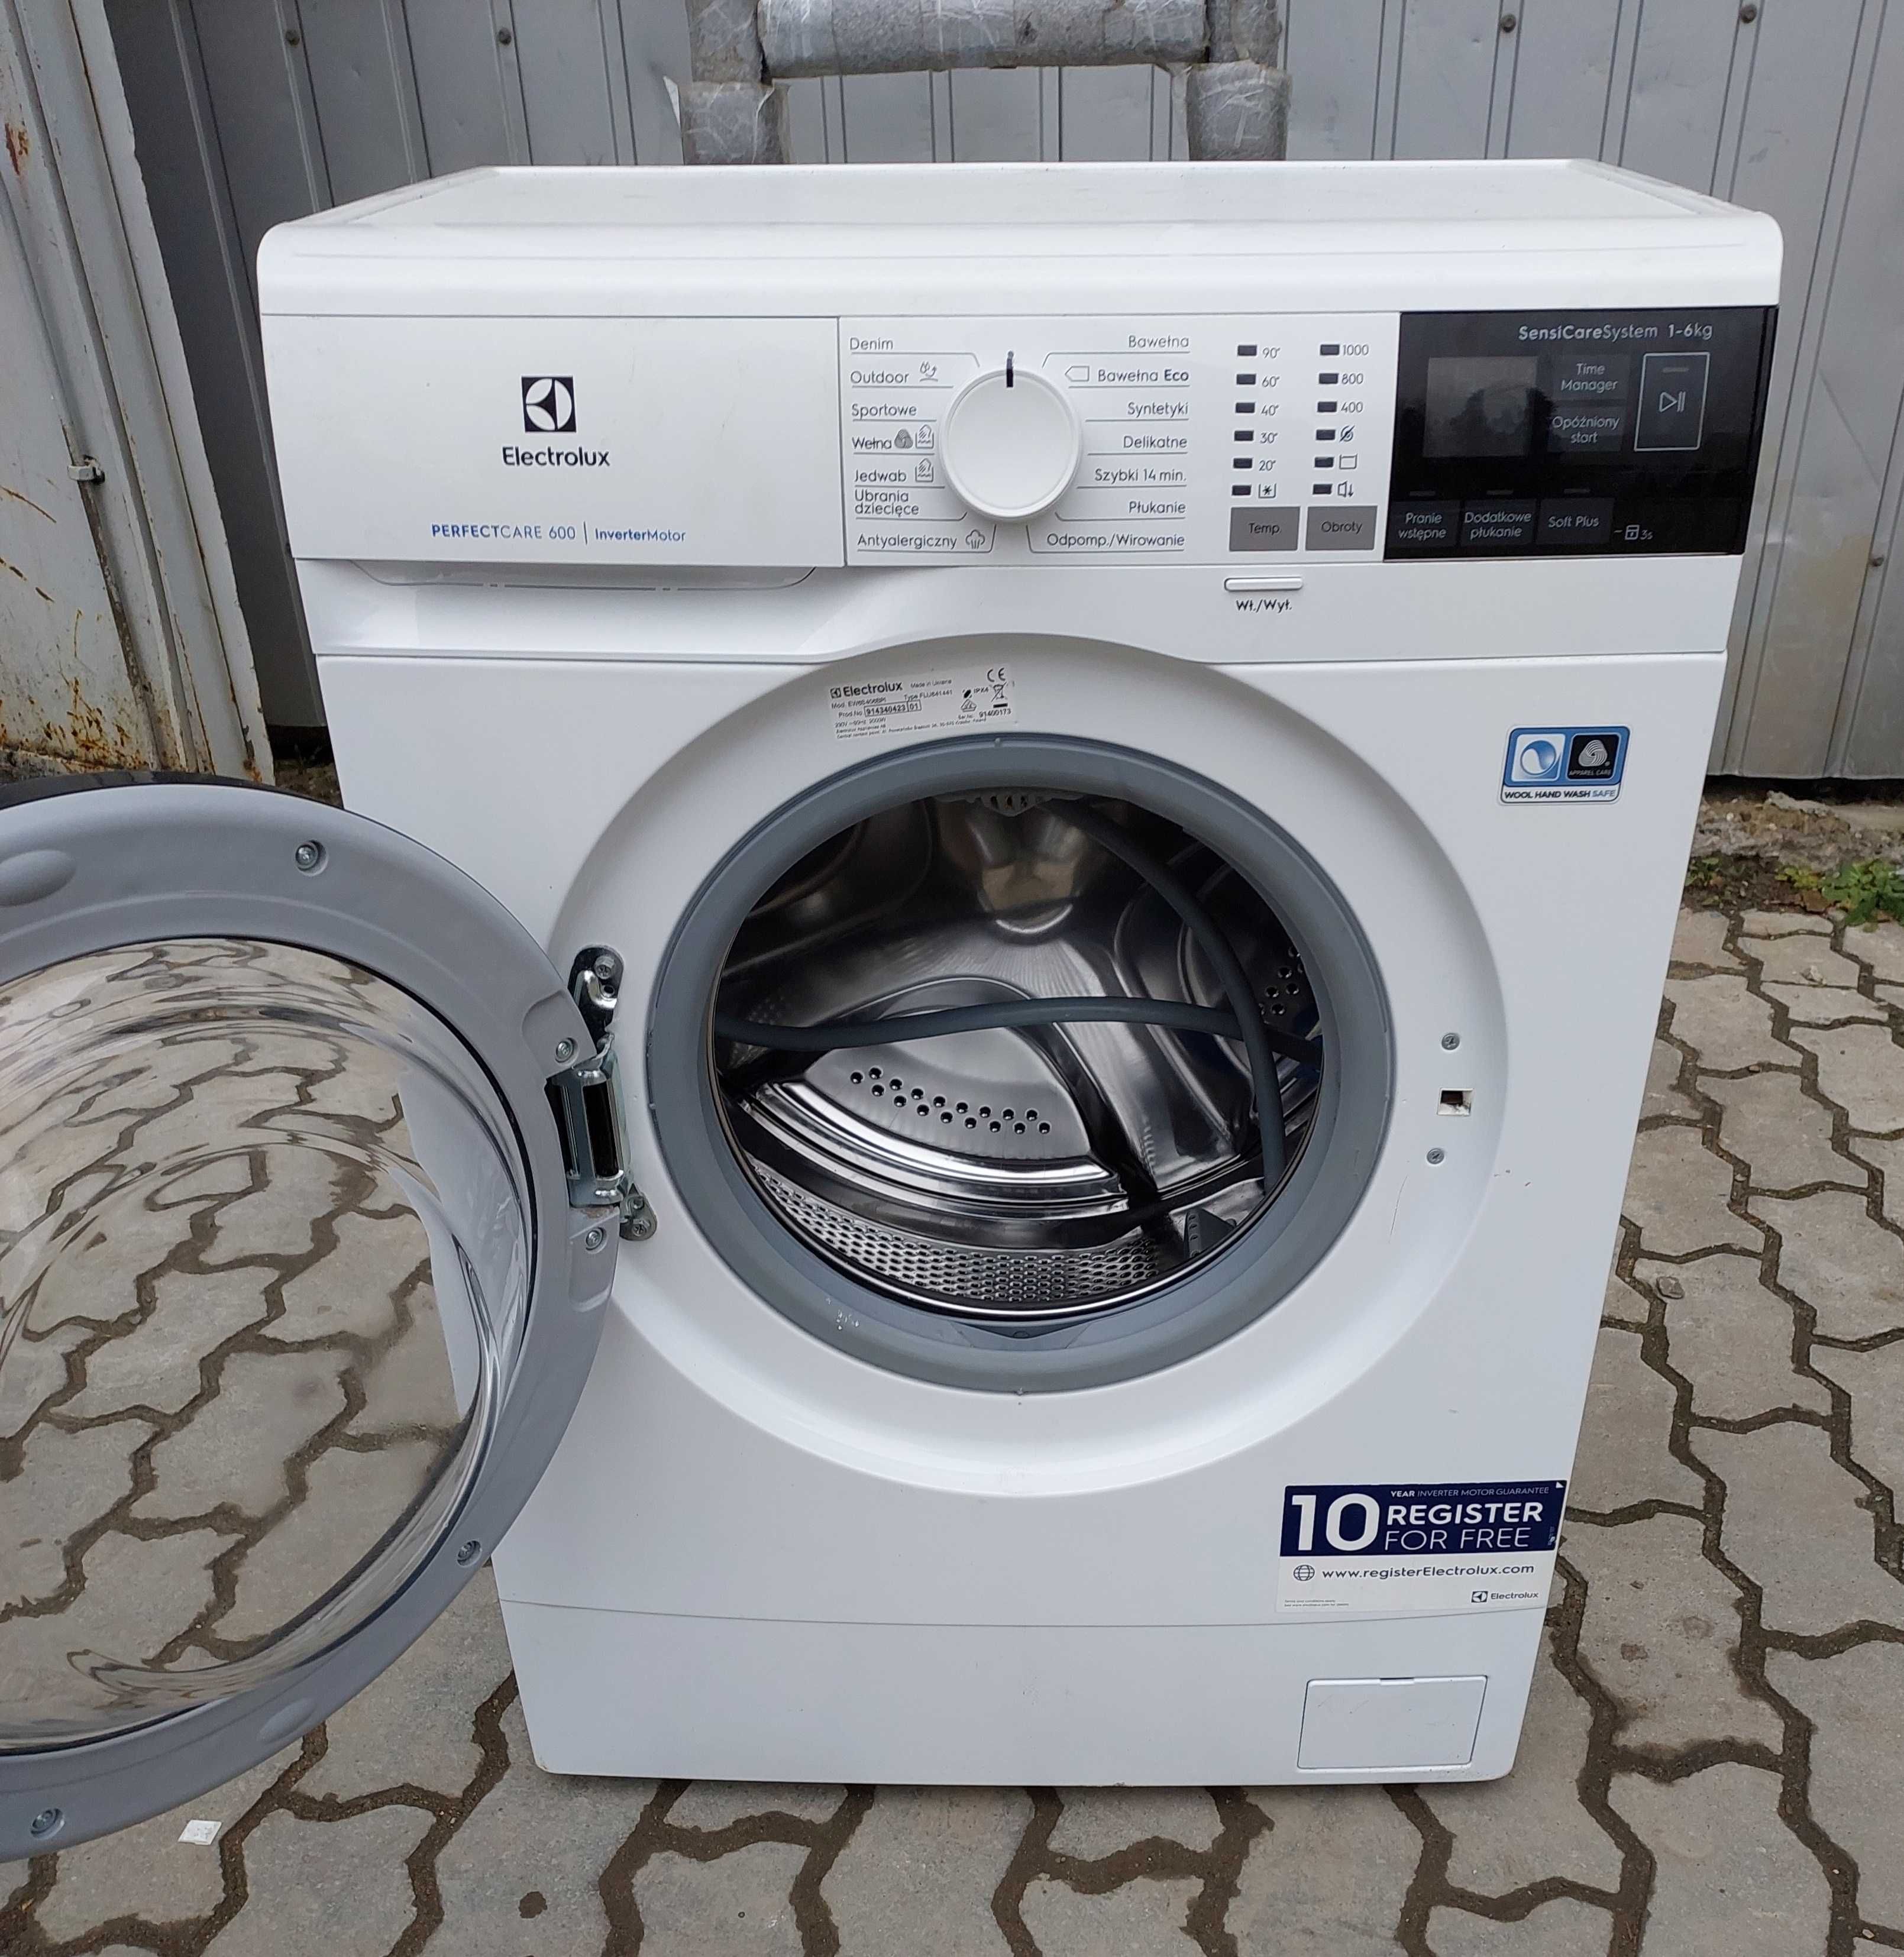 Узкая 40см стиральная машина 6кг А+++ Електролюкс Electrolux EW6S406BP